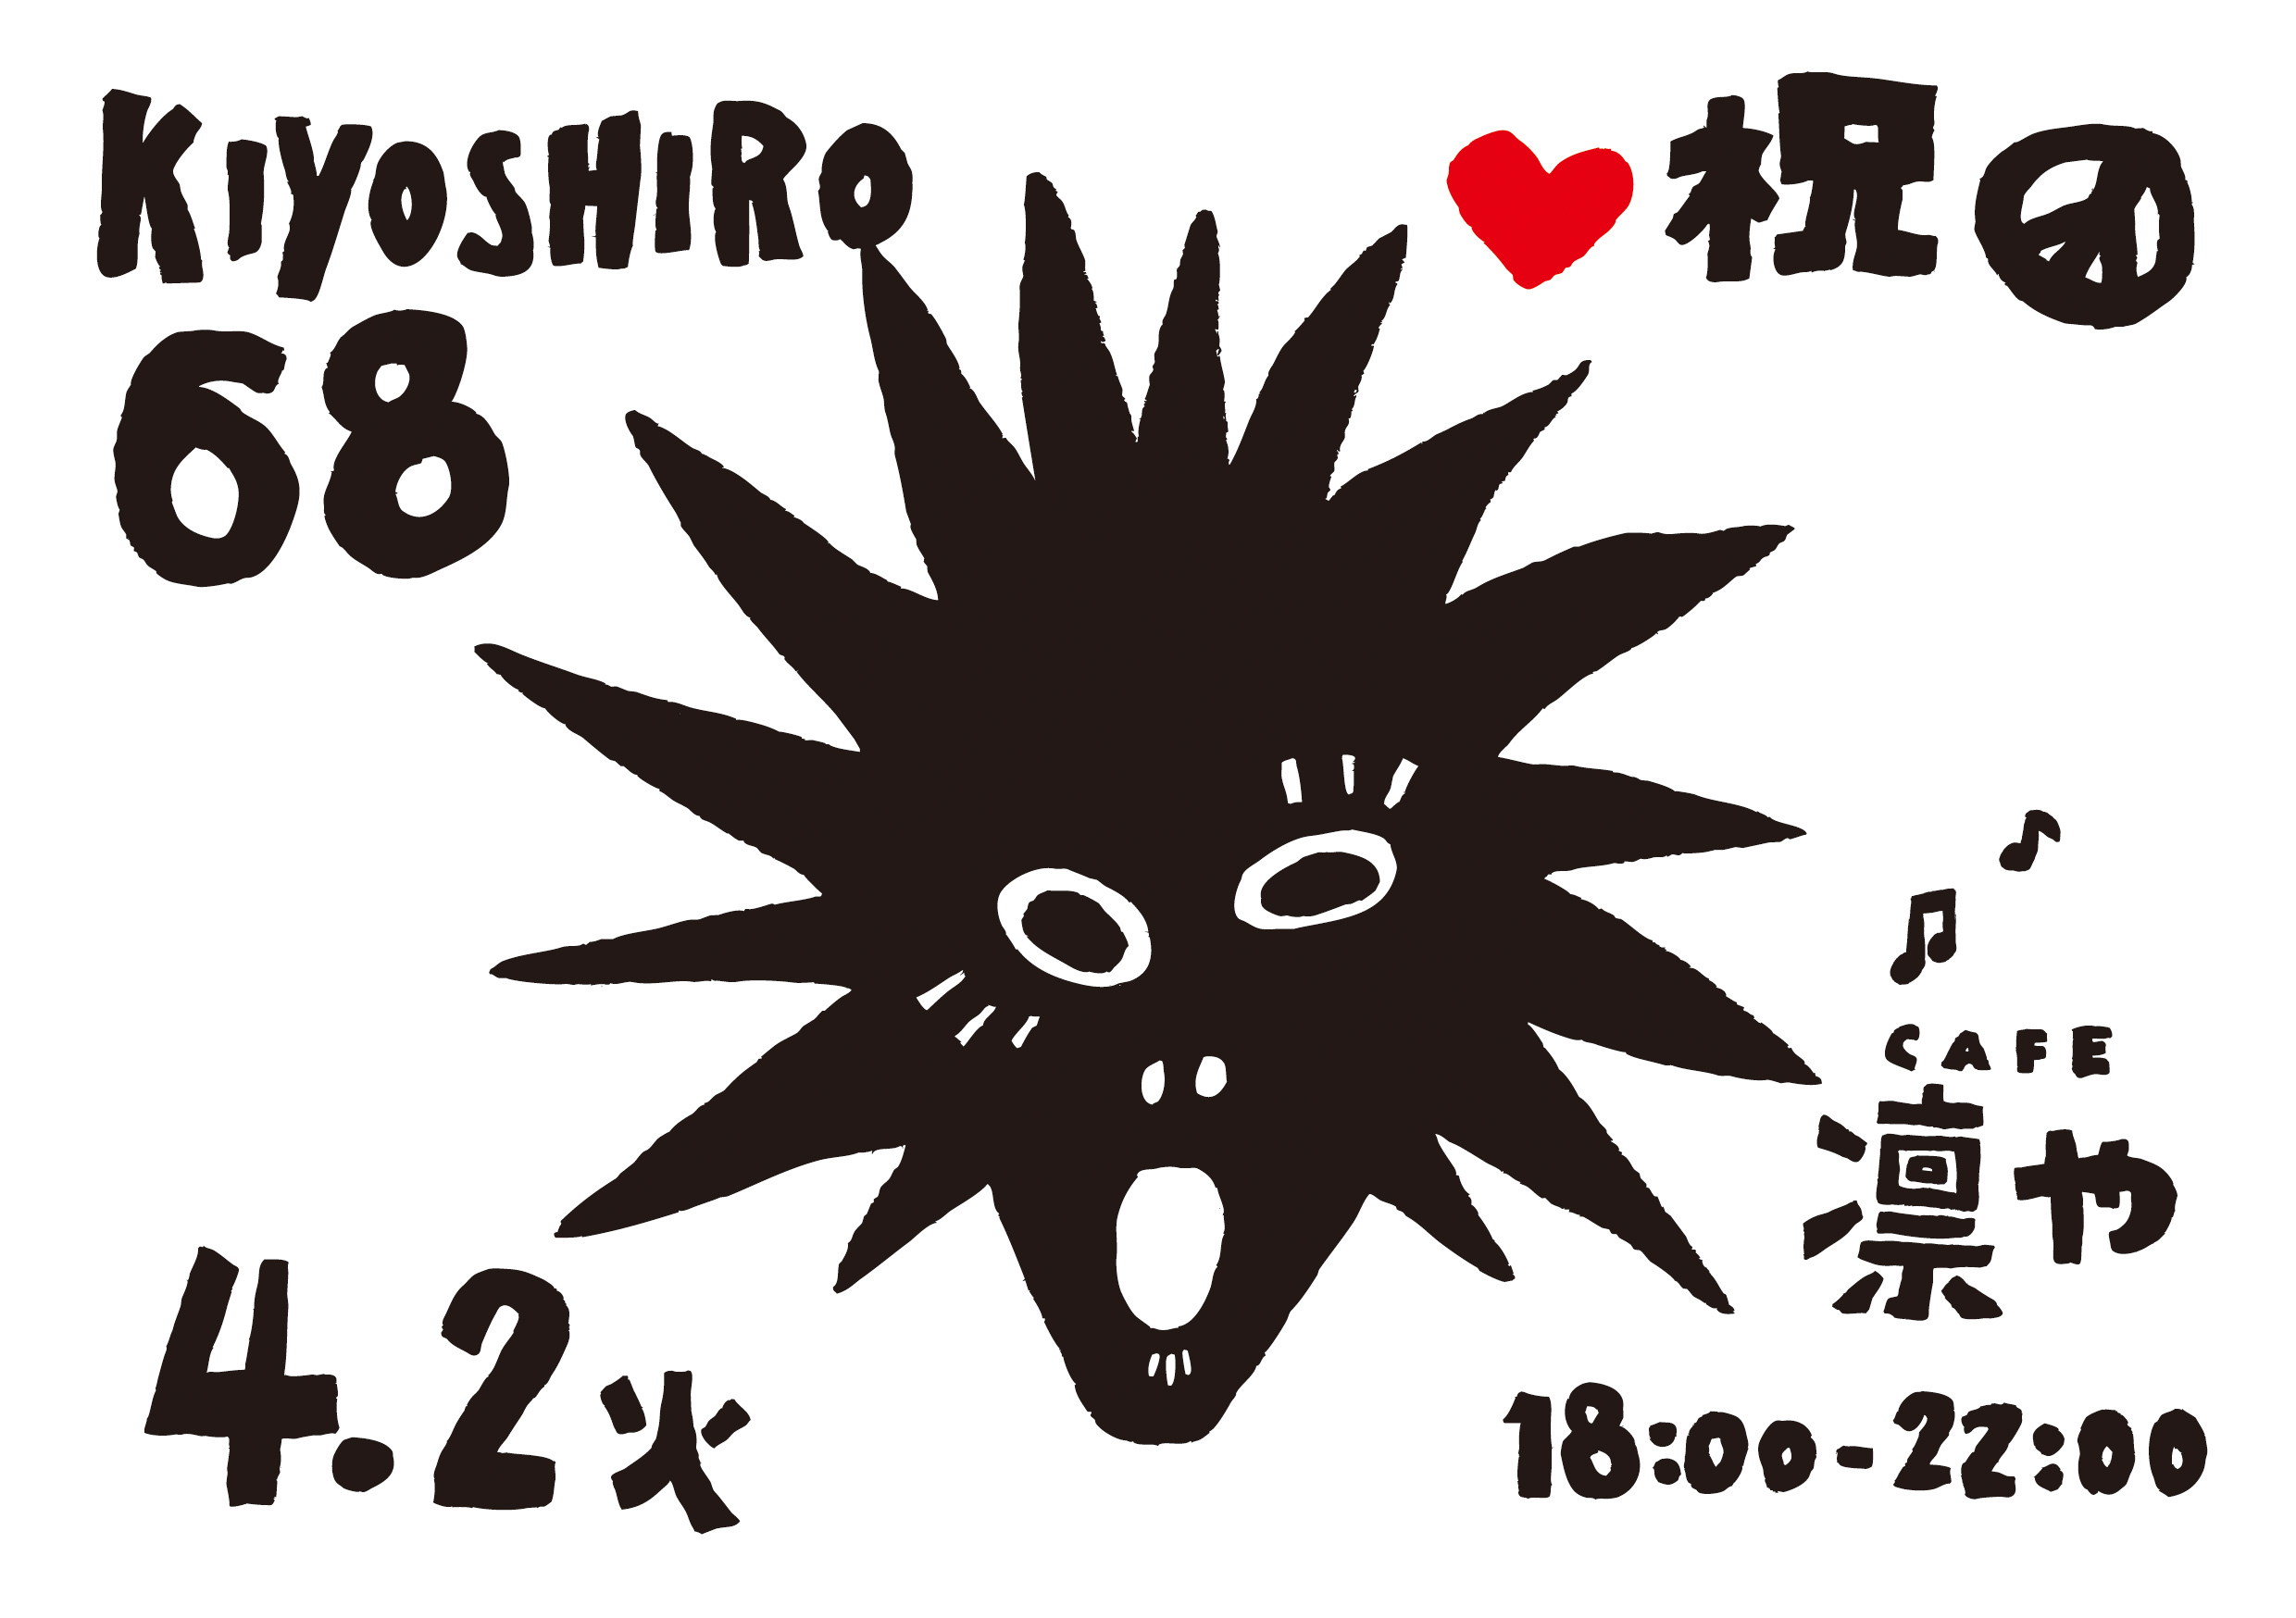 KIYOSHIRO68BDPARTY